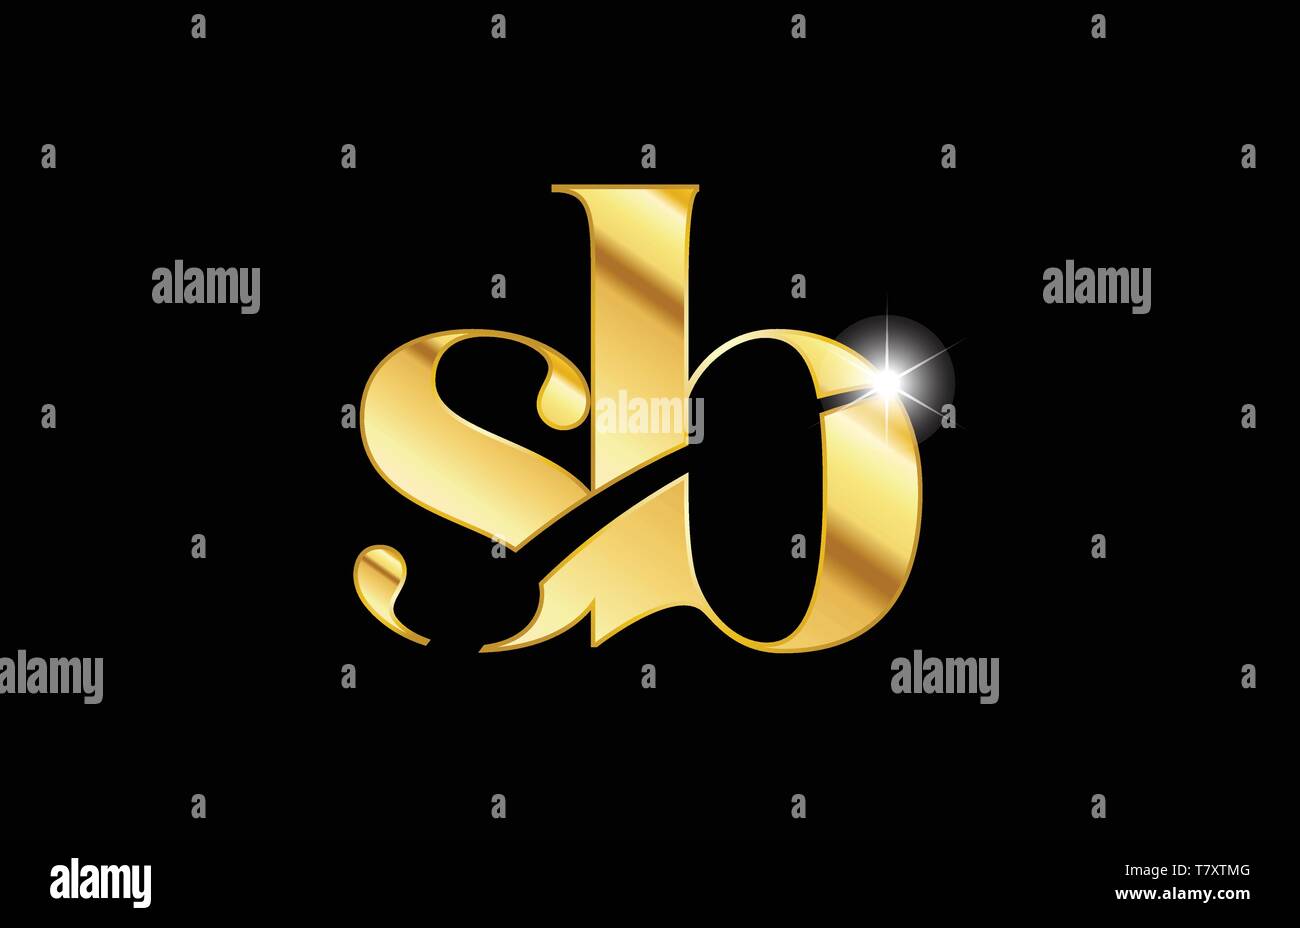 Gold Metall Metallische Buchstaben sb s b logo Icon Design für eine Firma oder Geschäft Stock Vektor